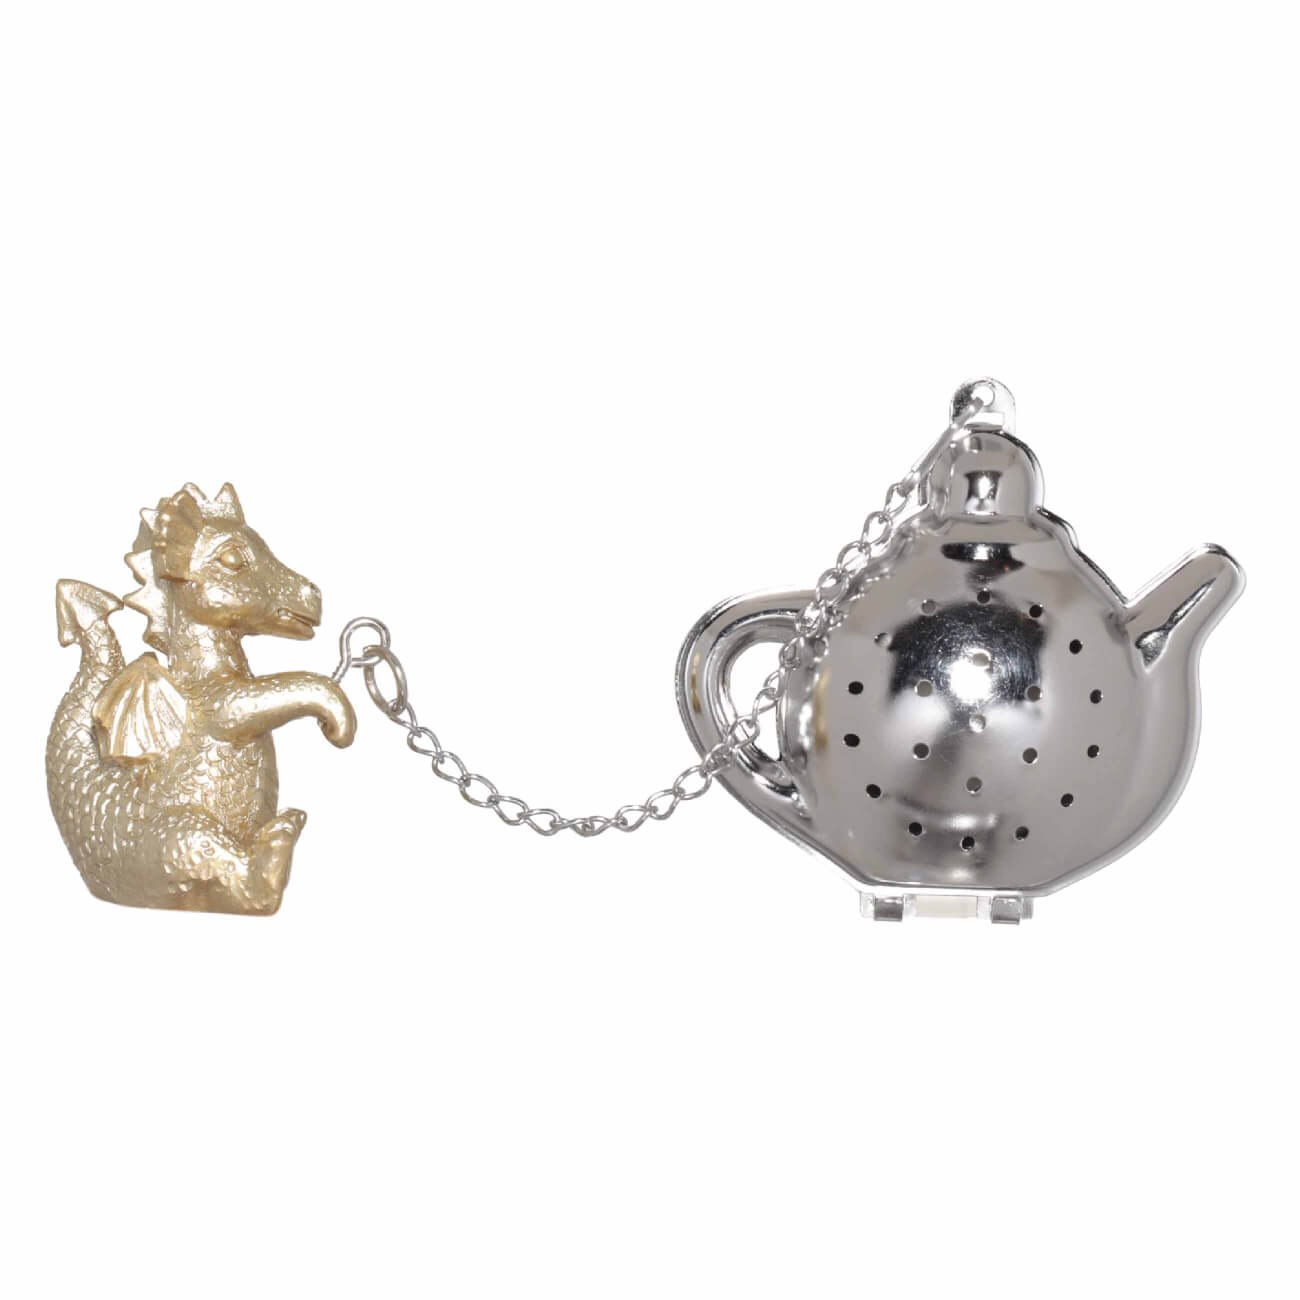 Сито для заваривания чая, 18 см, сталь/полирезин, золотисто-серебристое, Дракон, Dragon cute сувенир дракон лилу гжель